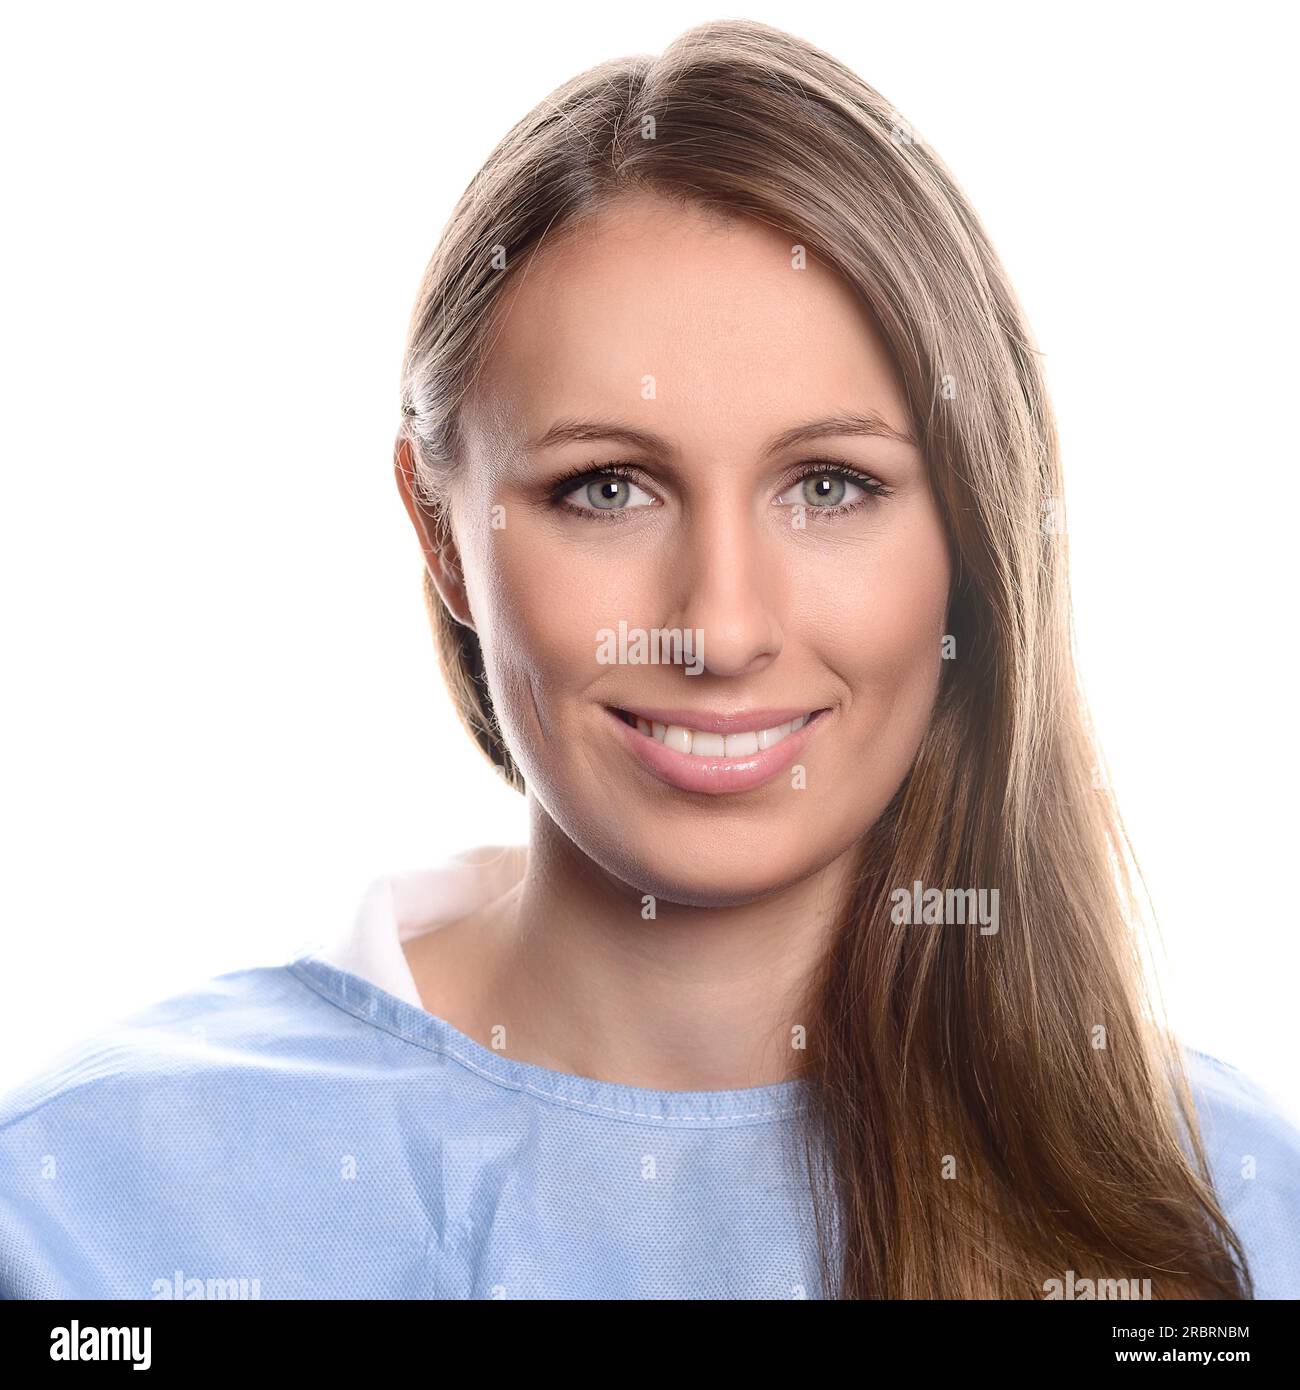 Ritratto di una giovane e amichevole praticante specialista che guarda la macchina fotografica, con occhi blu e un bel sorriso, indossando un medico blu Foto Stock